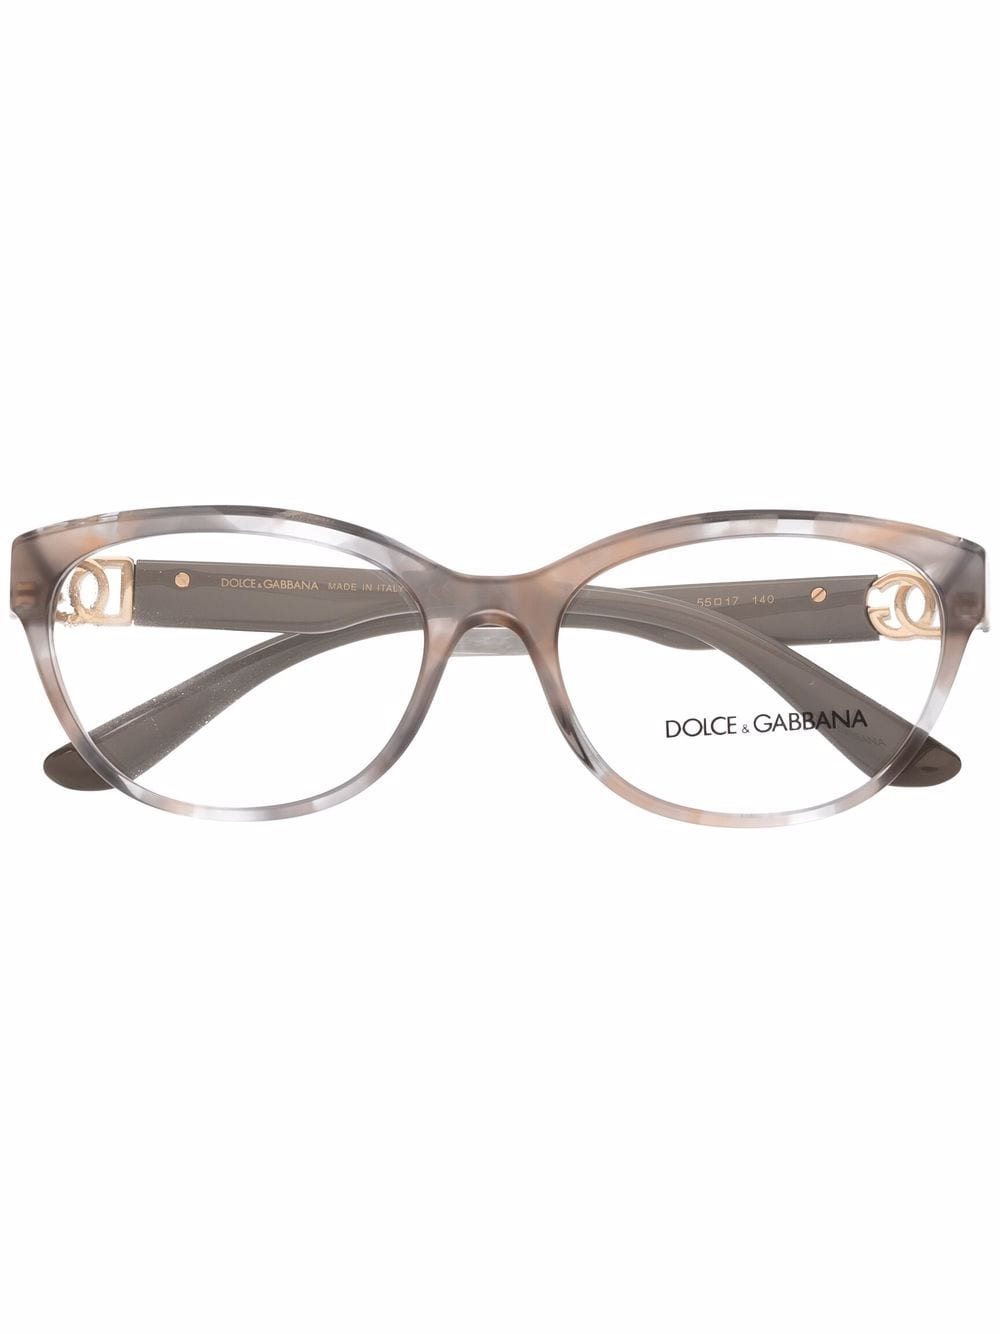 фото Dolce & gabbana eyewear очки в оправе 'кошачий глаз' черепаховой расцветки